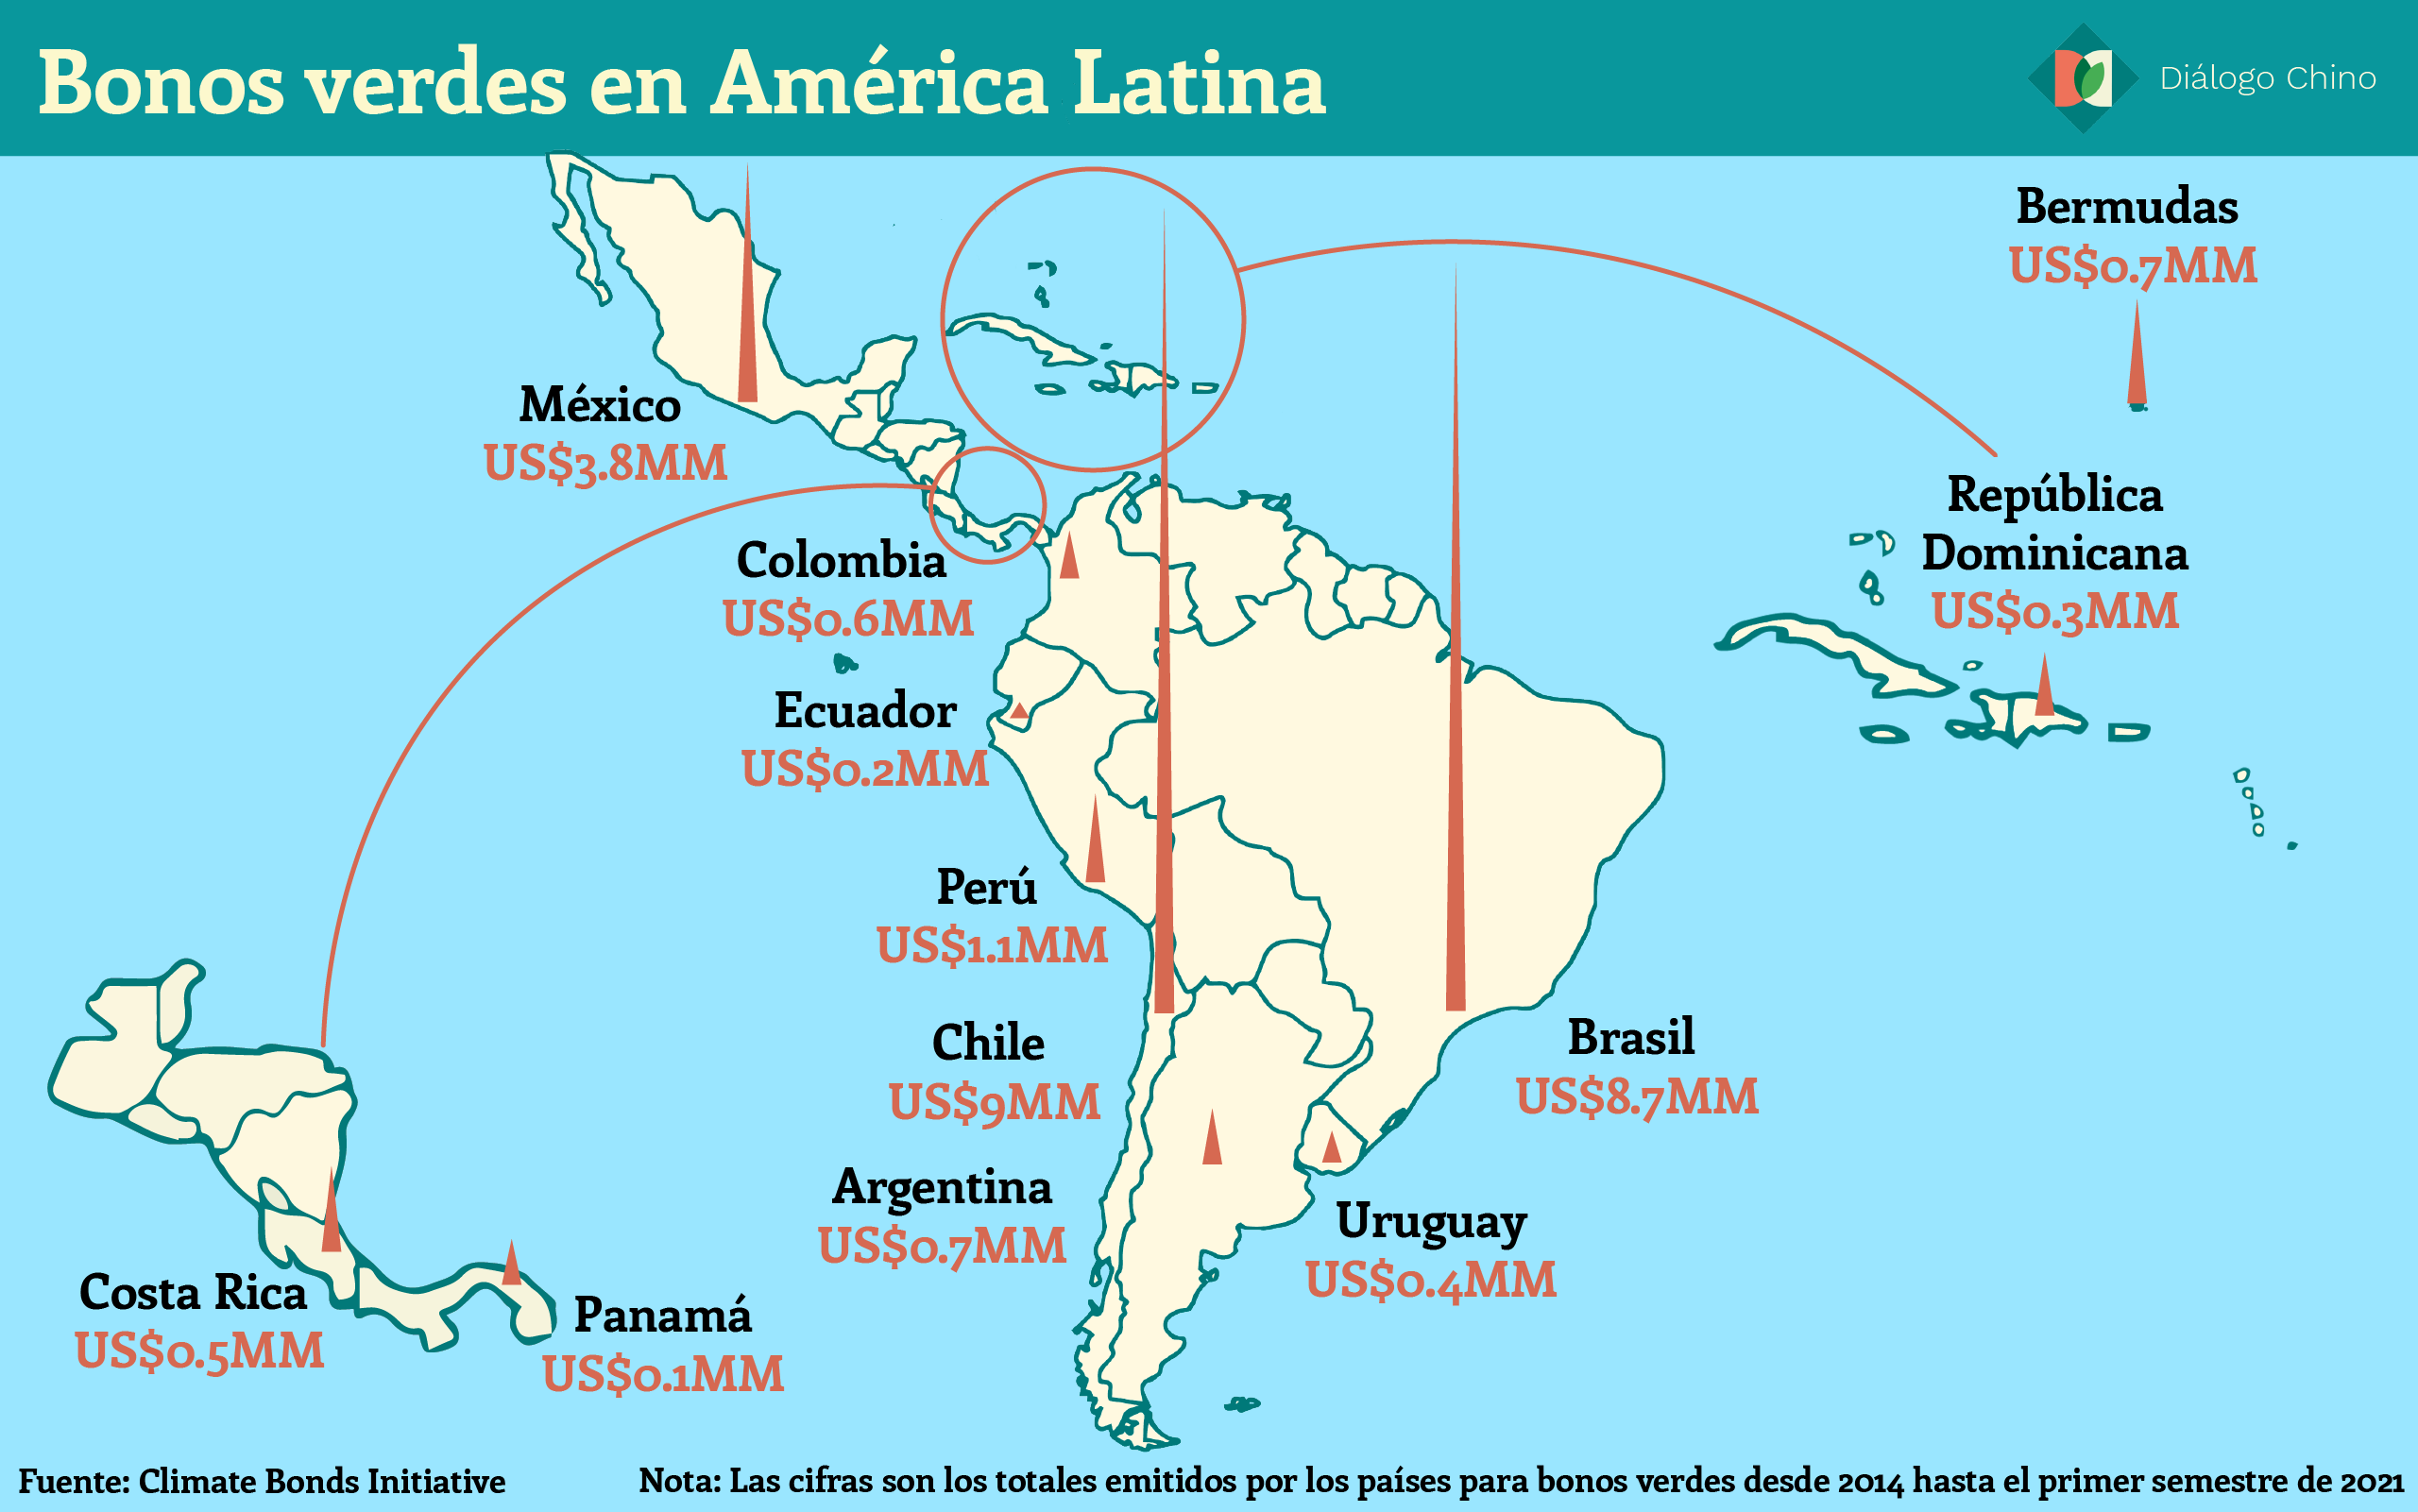 Mapa de América Latina que muestra los bonos verdes en la región